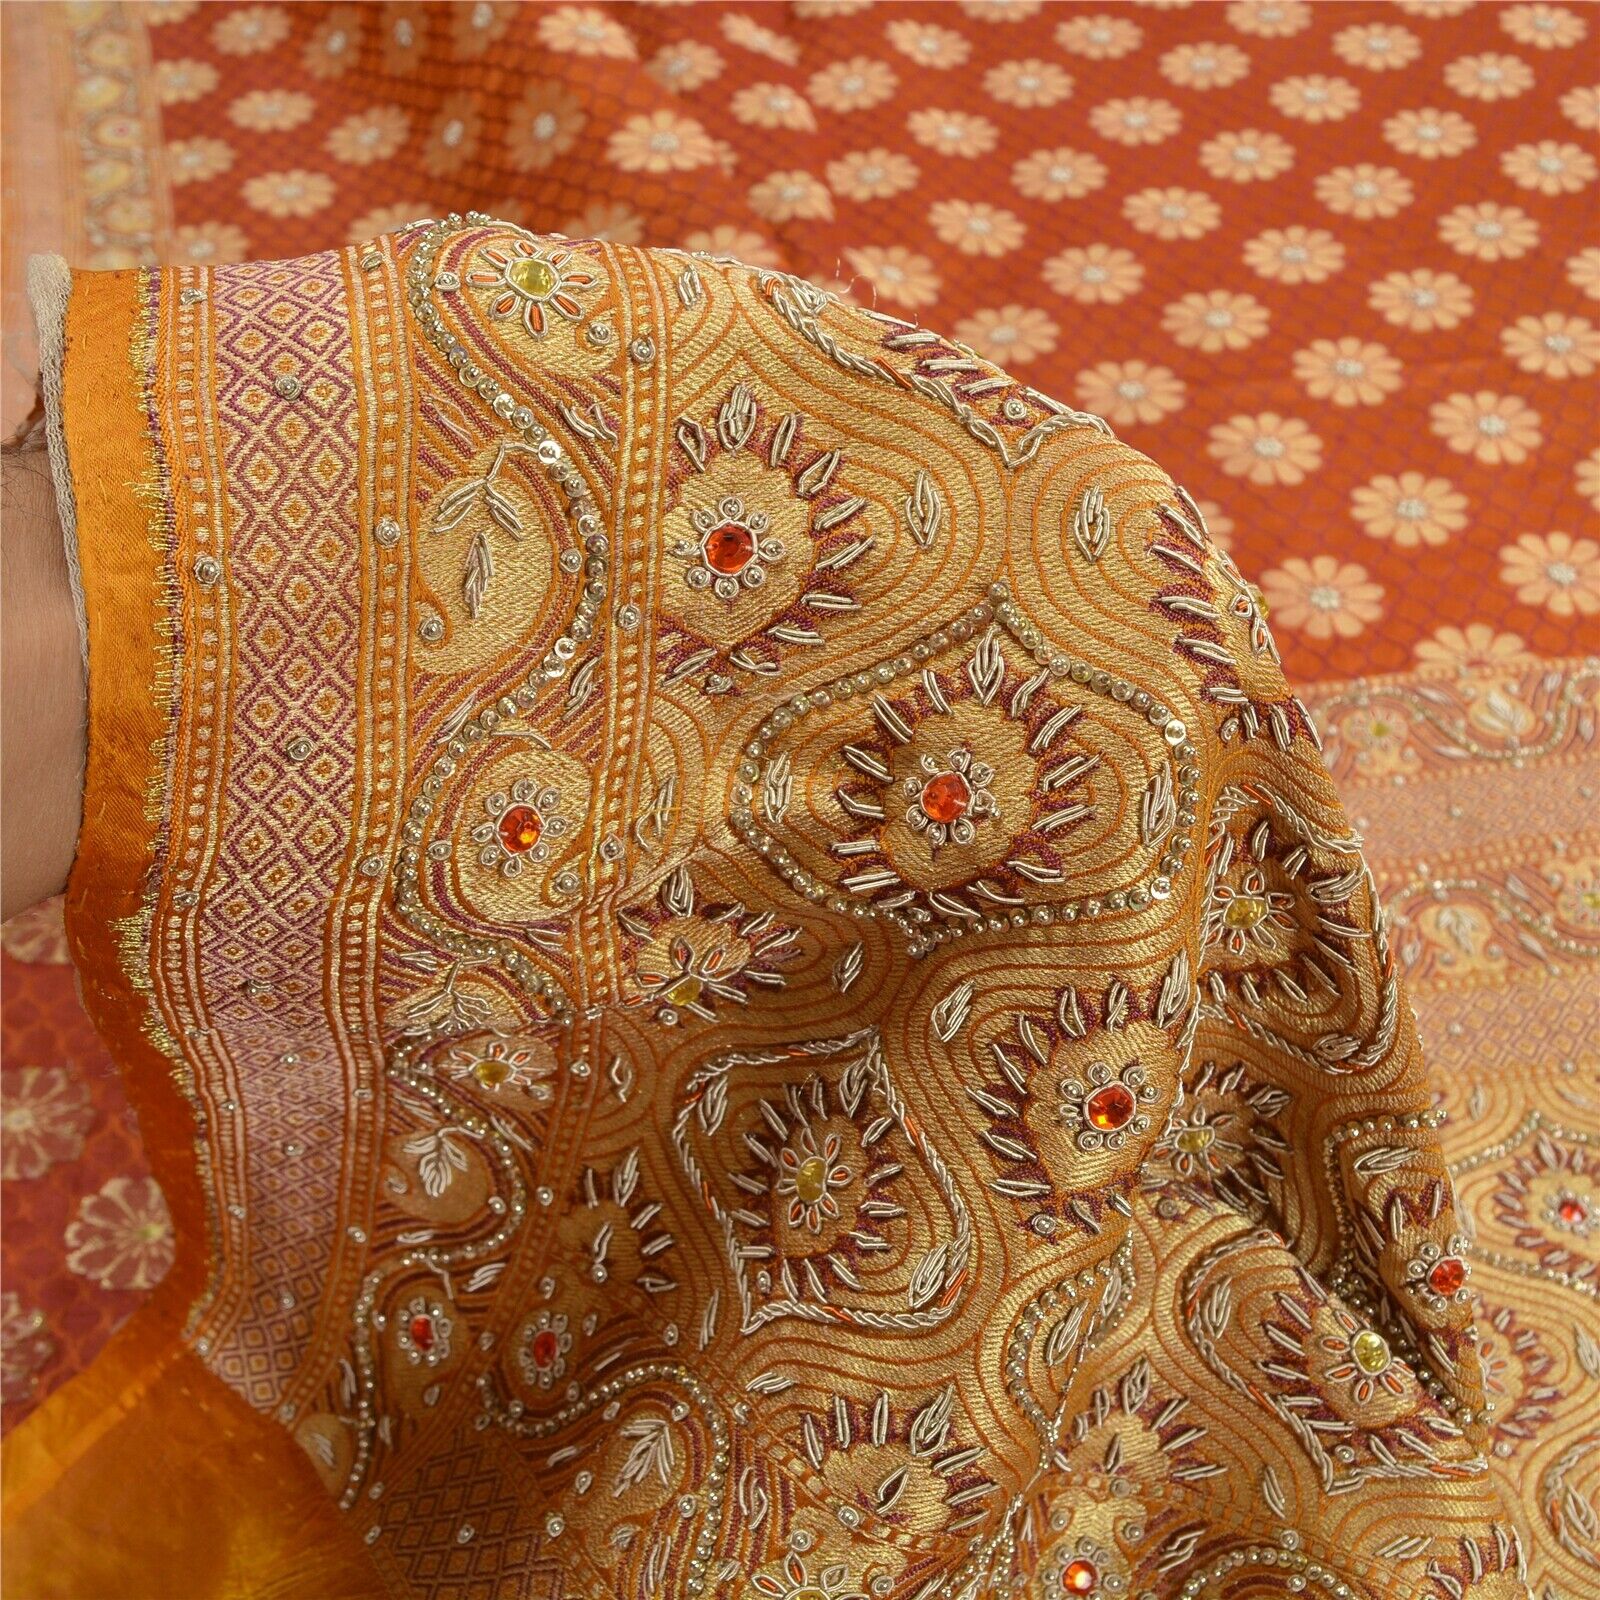 Sanskriti Vintage Saffron Sarees Pure Satin Silk Brocade/Banarasi Sari Fabric